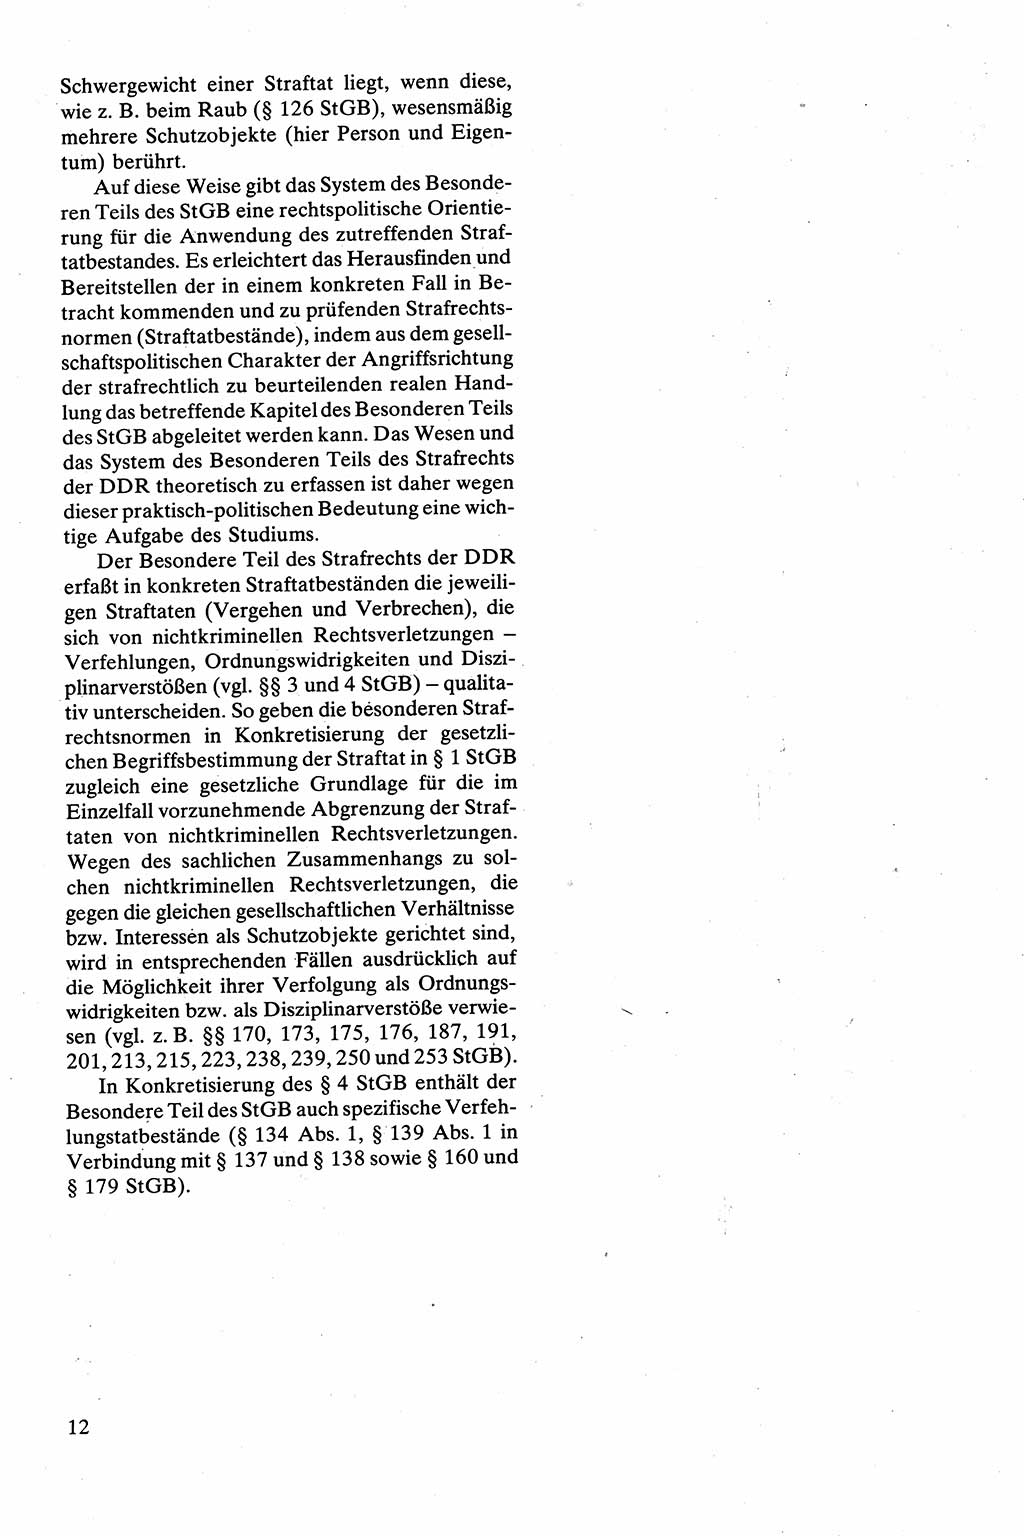 Strafrecht [Deutsche Demokratische Republik (DDR)], Besonderer Teil, Lehrbuch 1981, Seite 12 (Strafr. DDR BT Lb. 1981, S. 12)